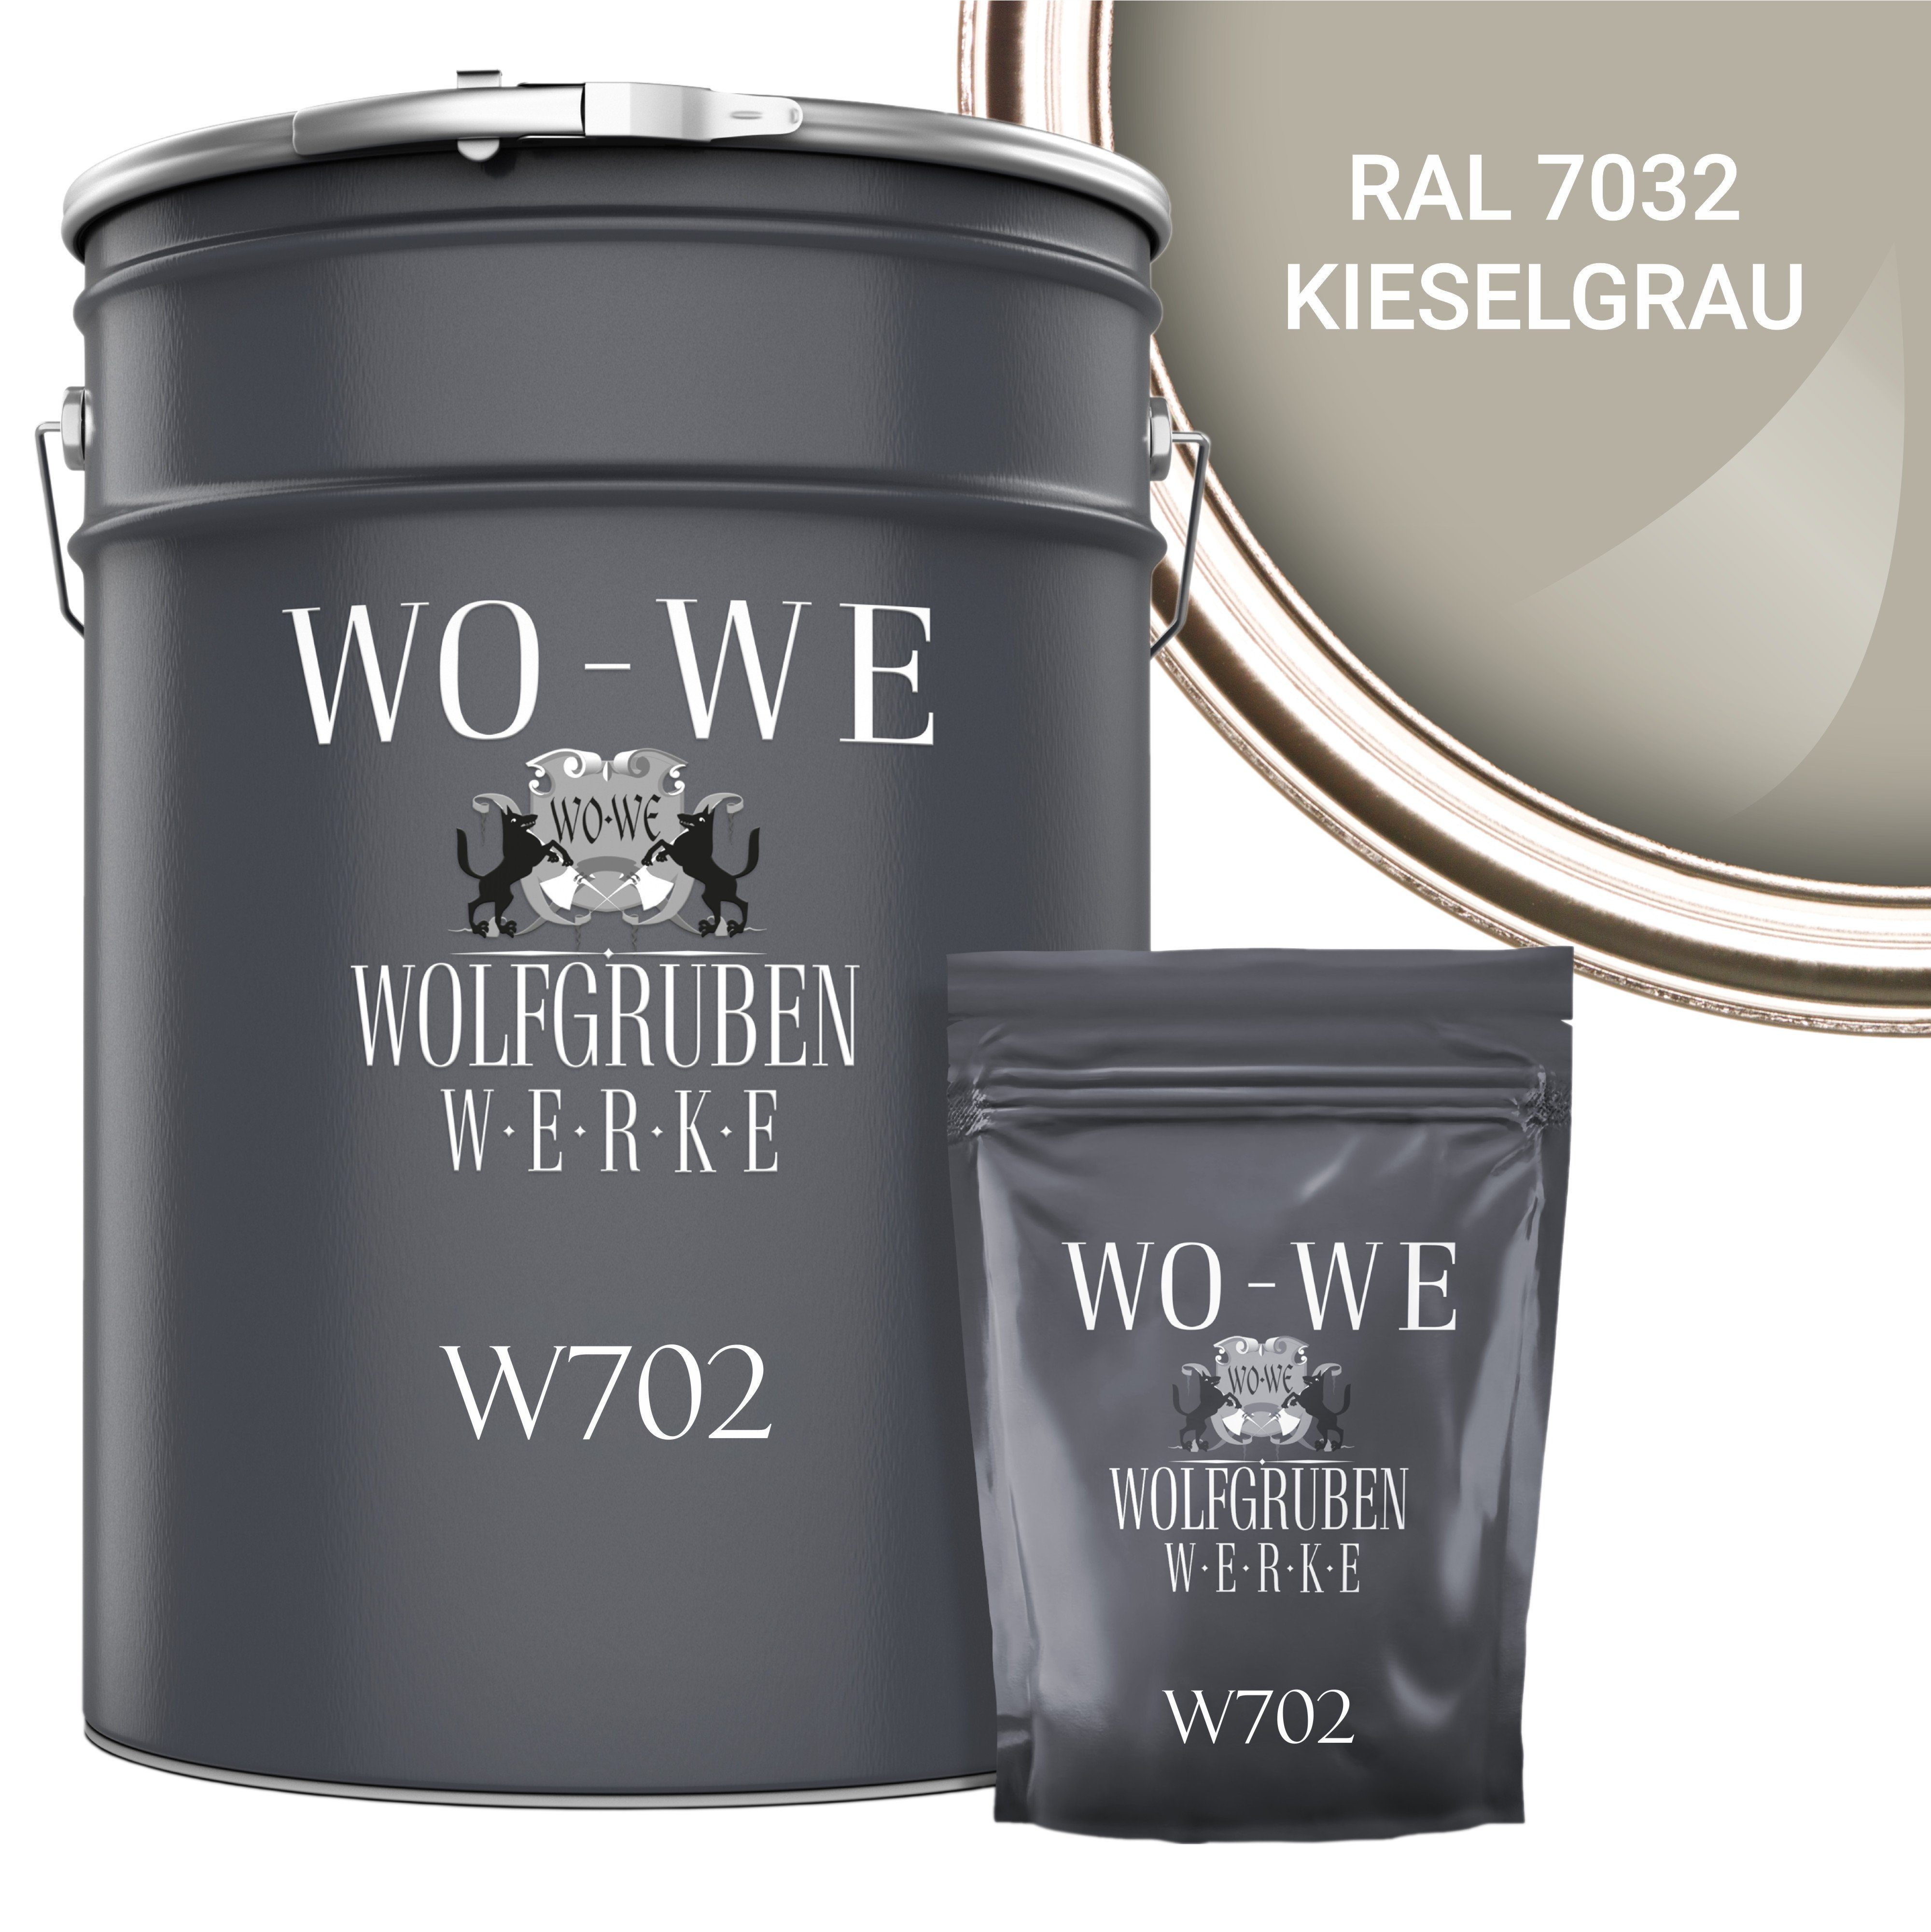 WO-WE Bodenversiegelung 2K W702, Epoxidharz 7032 Bodenbeschichtung Garagenfarbe Seidenglänzend, Kieselgrau RAL 2,5-20Kg